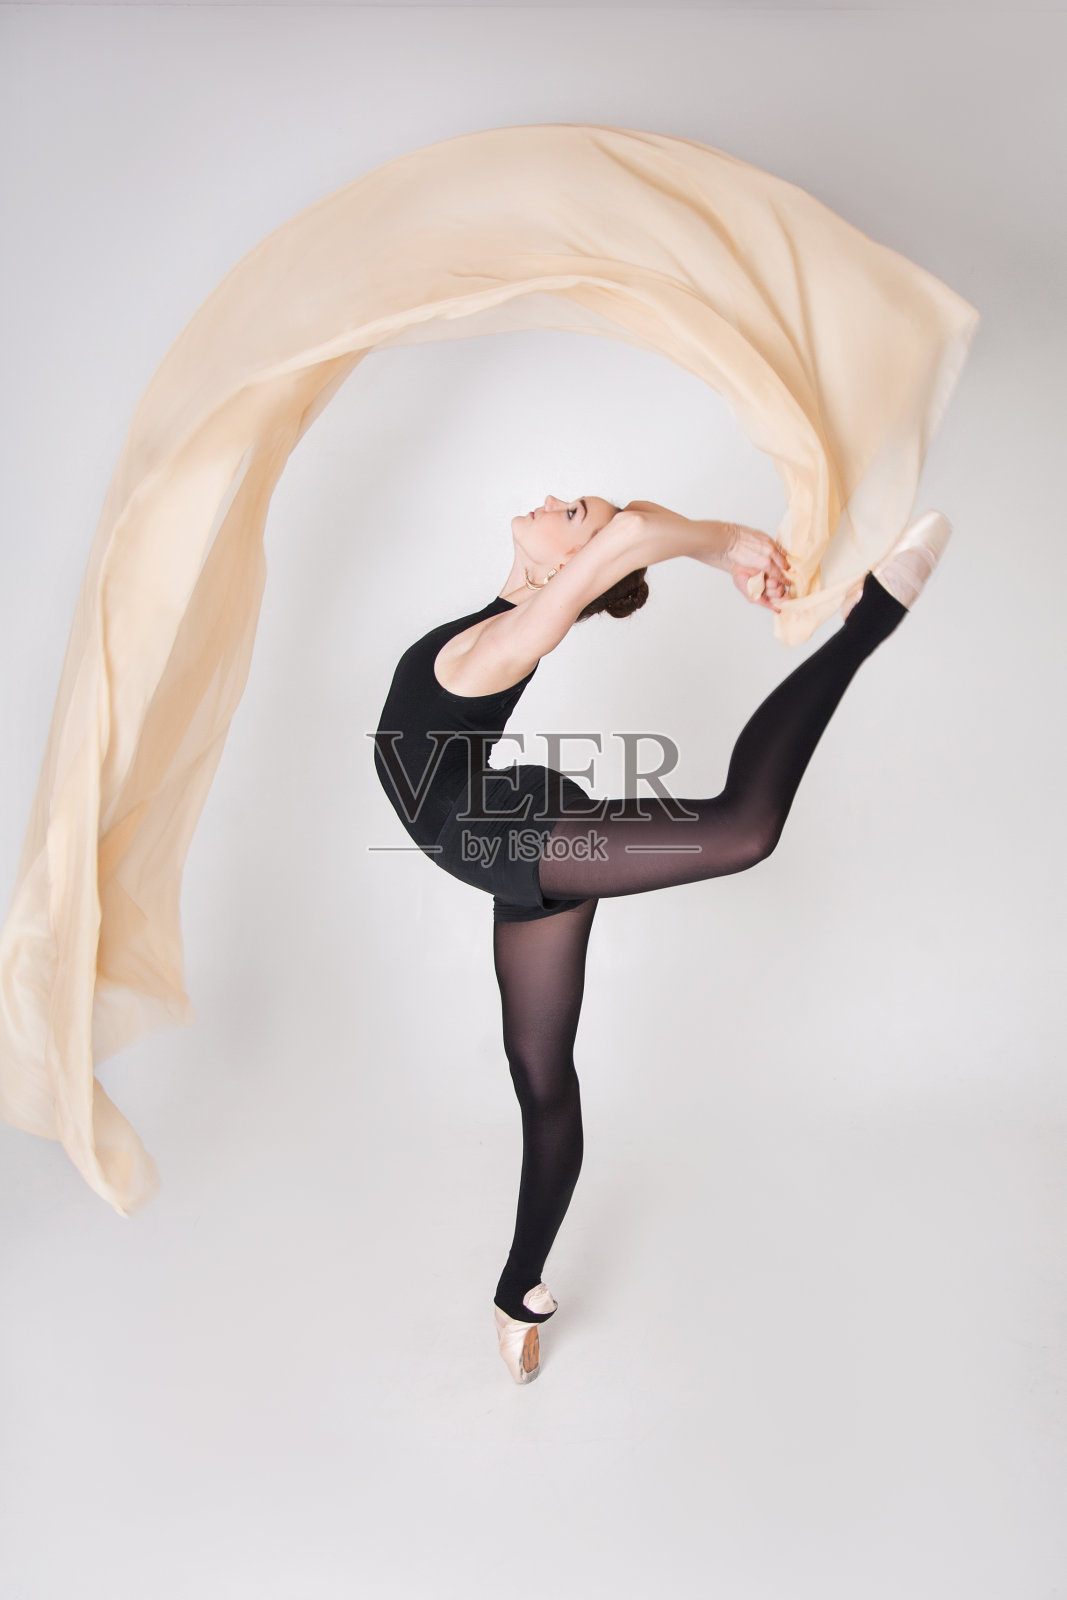 芭蕾舞者与空气自由飞行的布料照片摄影图片